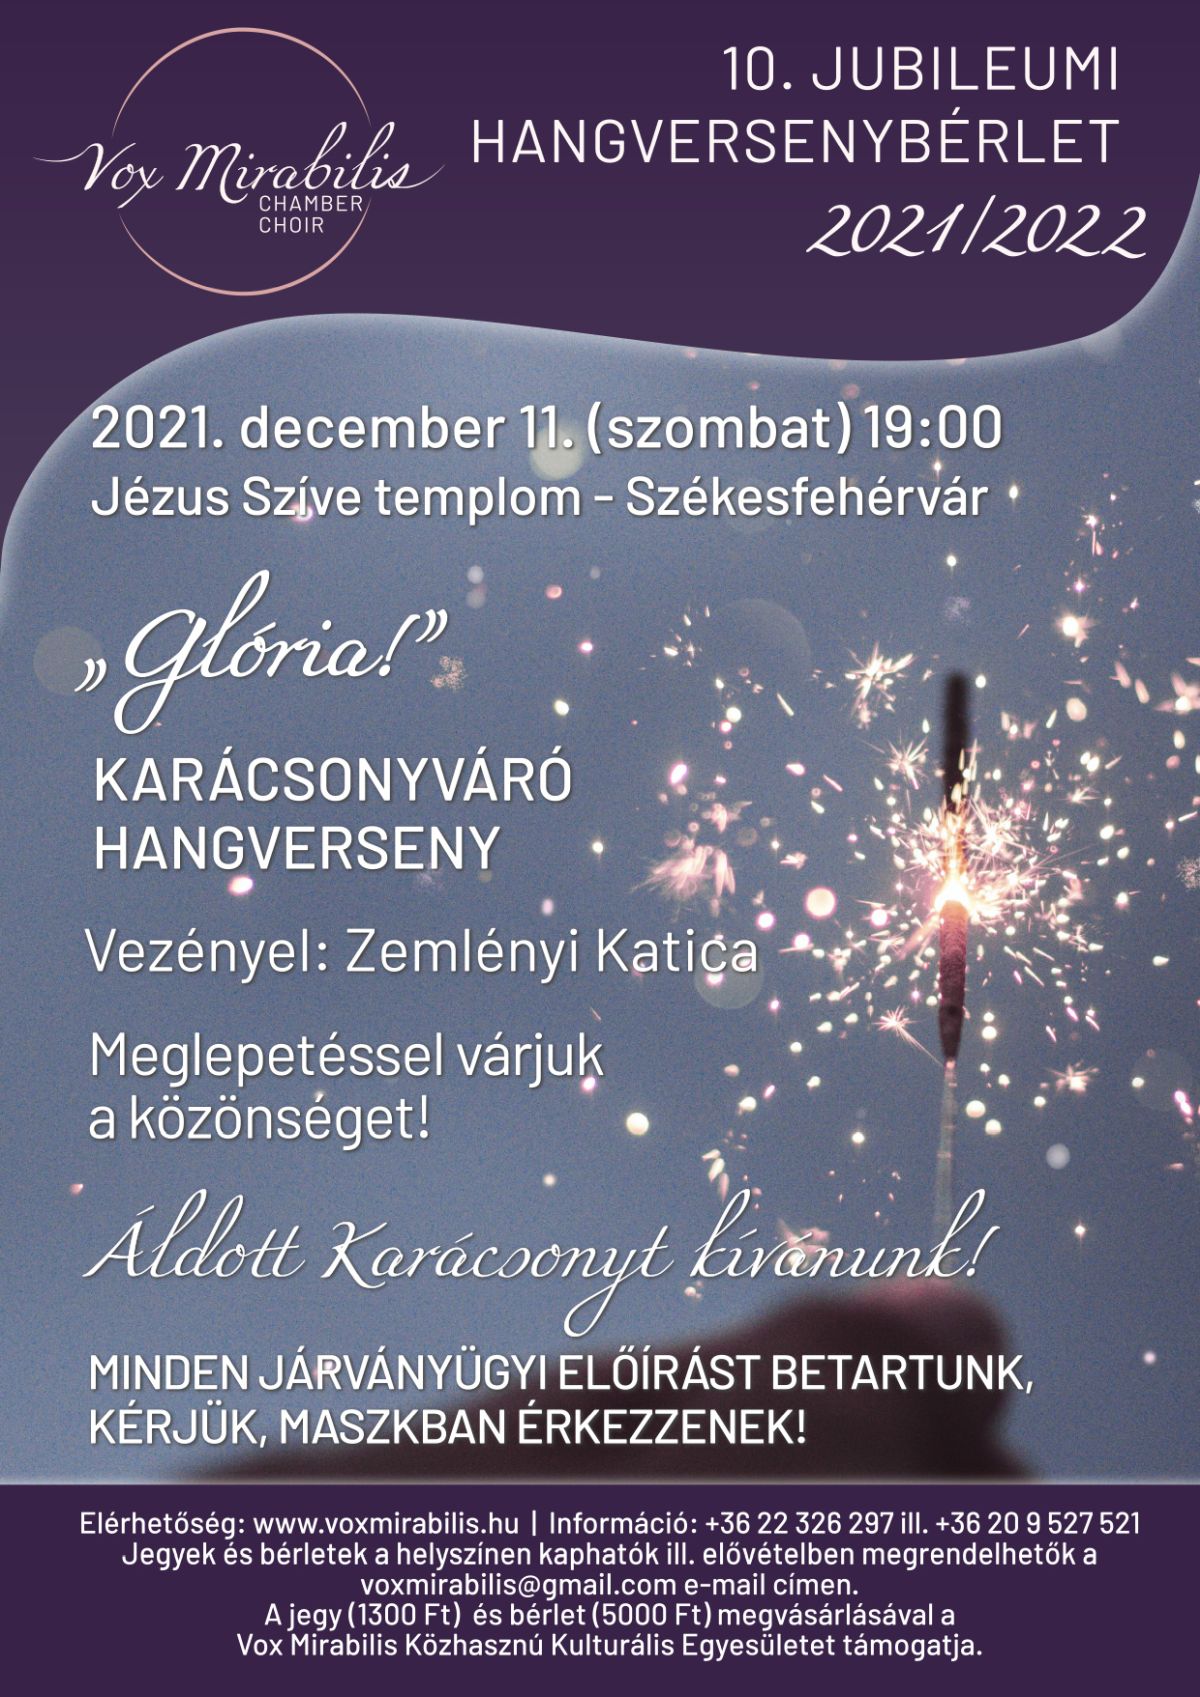 Glória - karácsonyváró koncert a Vox Mirabilis Kamarakórustól